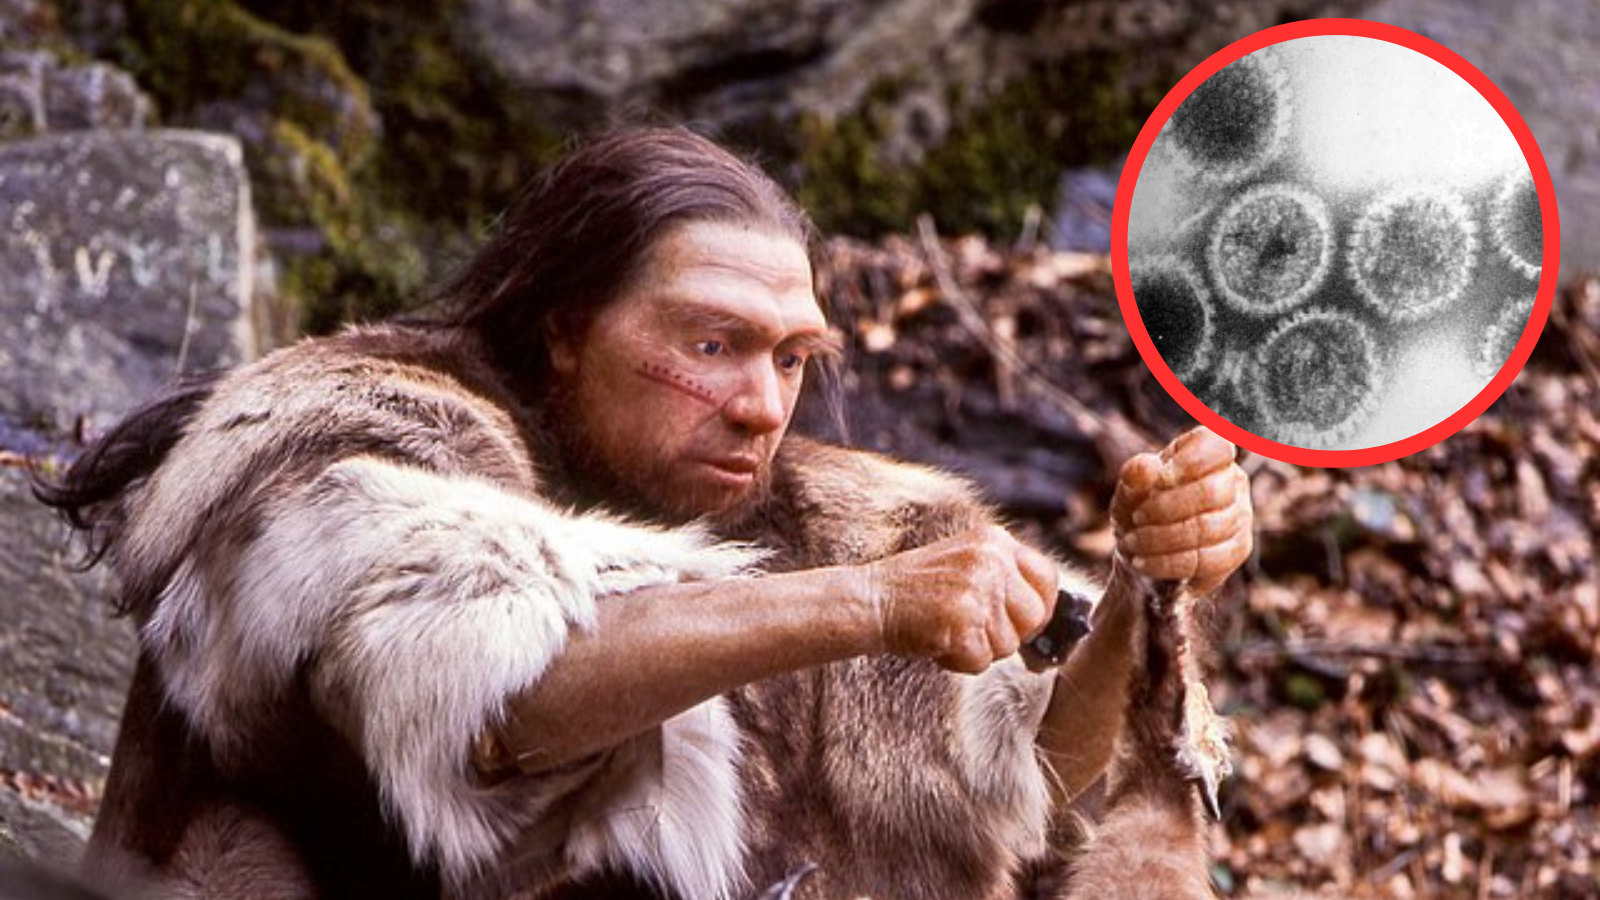 Groza iz preteklosti: Znanstveniki bodo obudili viruse, ki so morda ubili Neandertalce